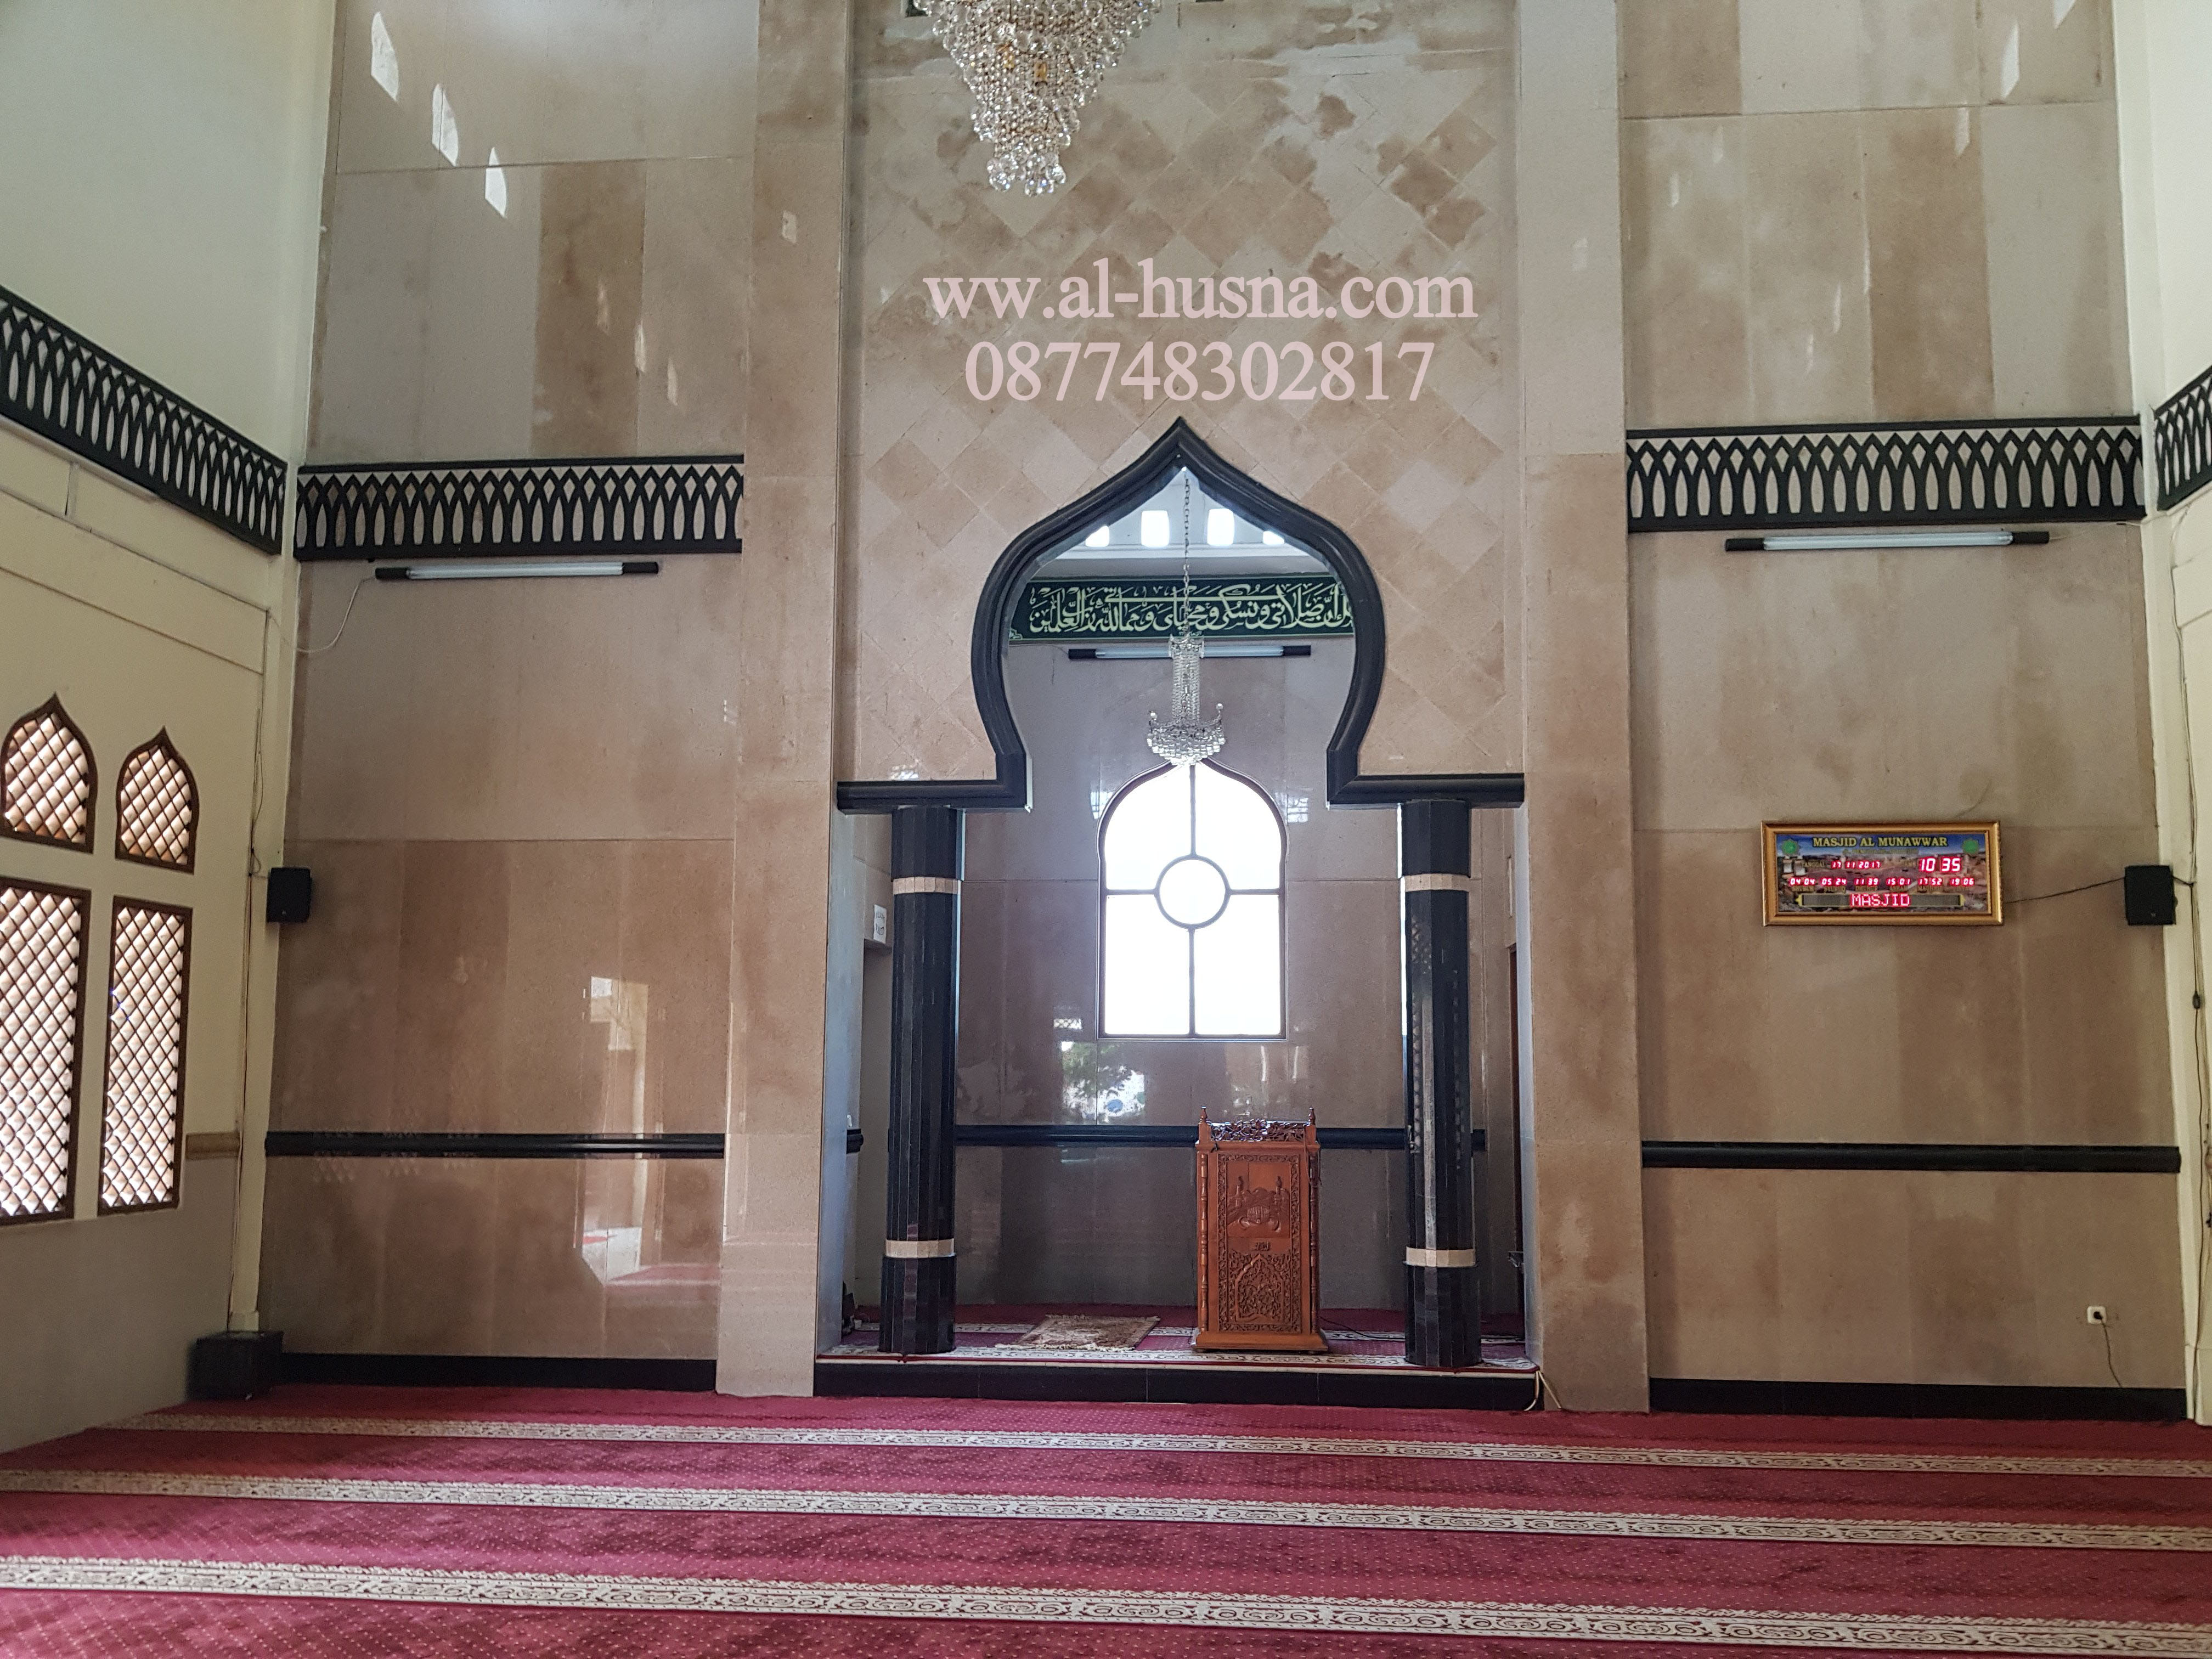 Jual Karpet Masjid Meteran Murah di Jakarta Selatan- 